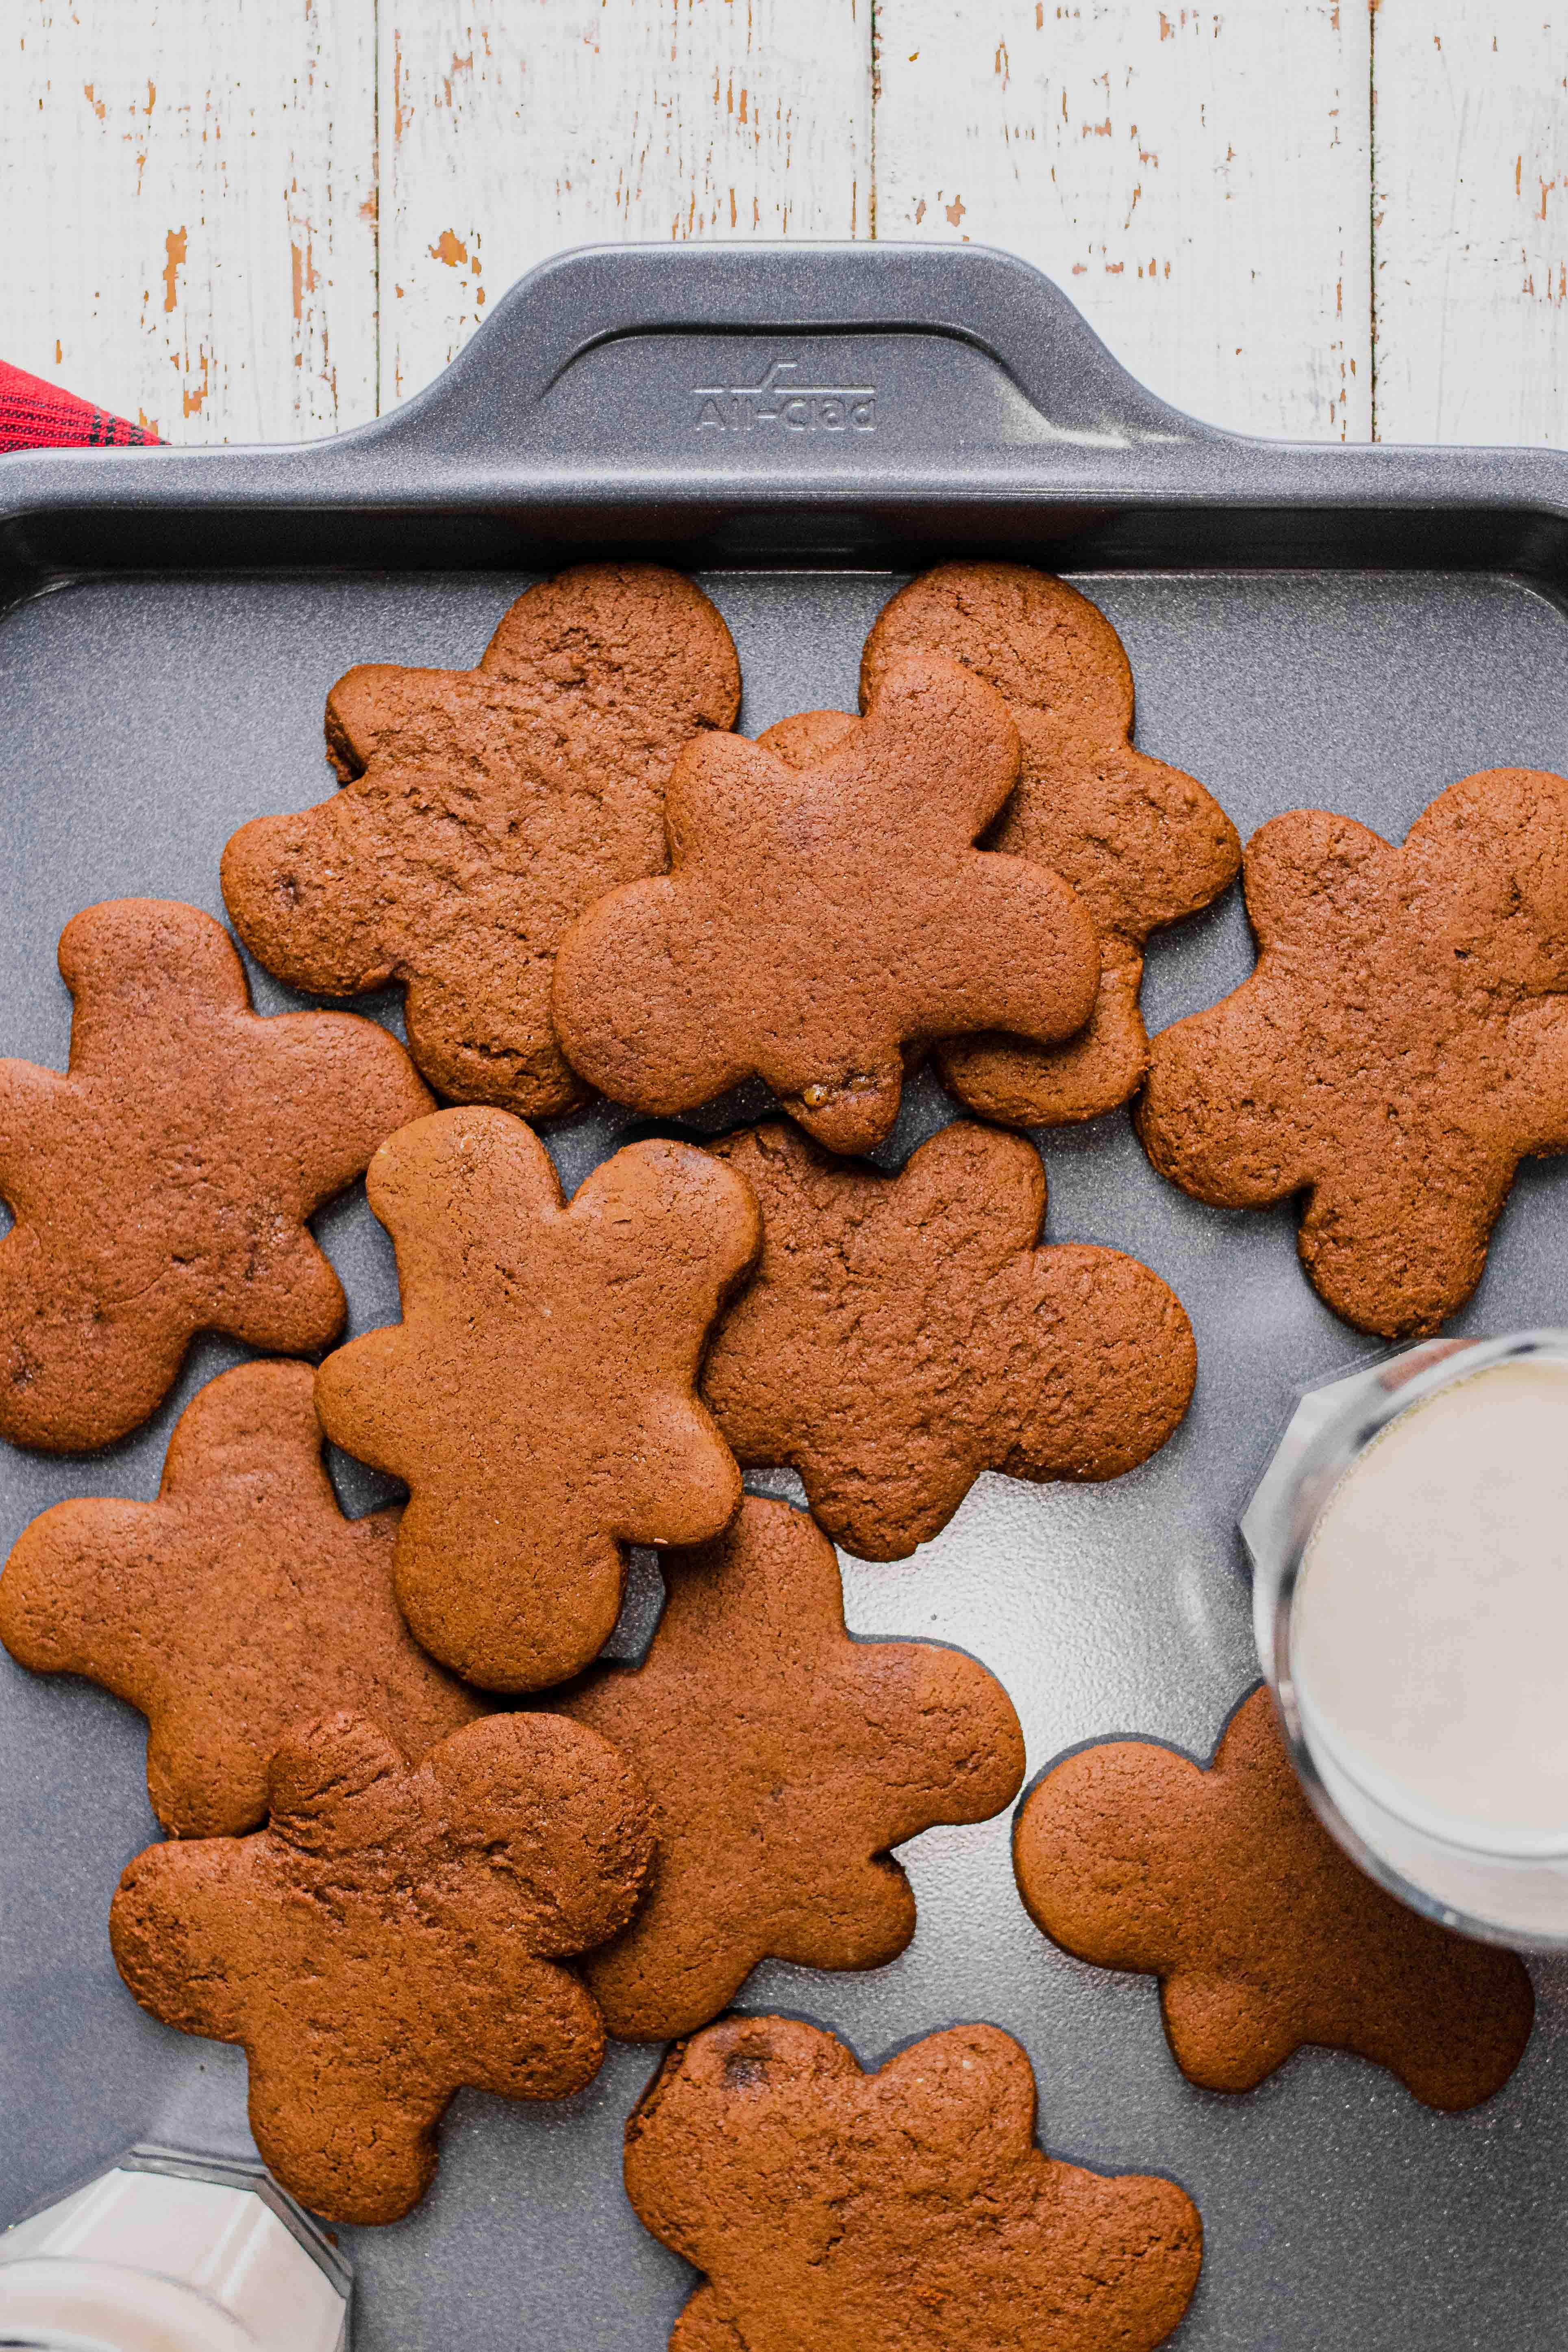 gingerbread people cookies on baking sheet